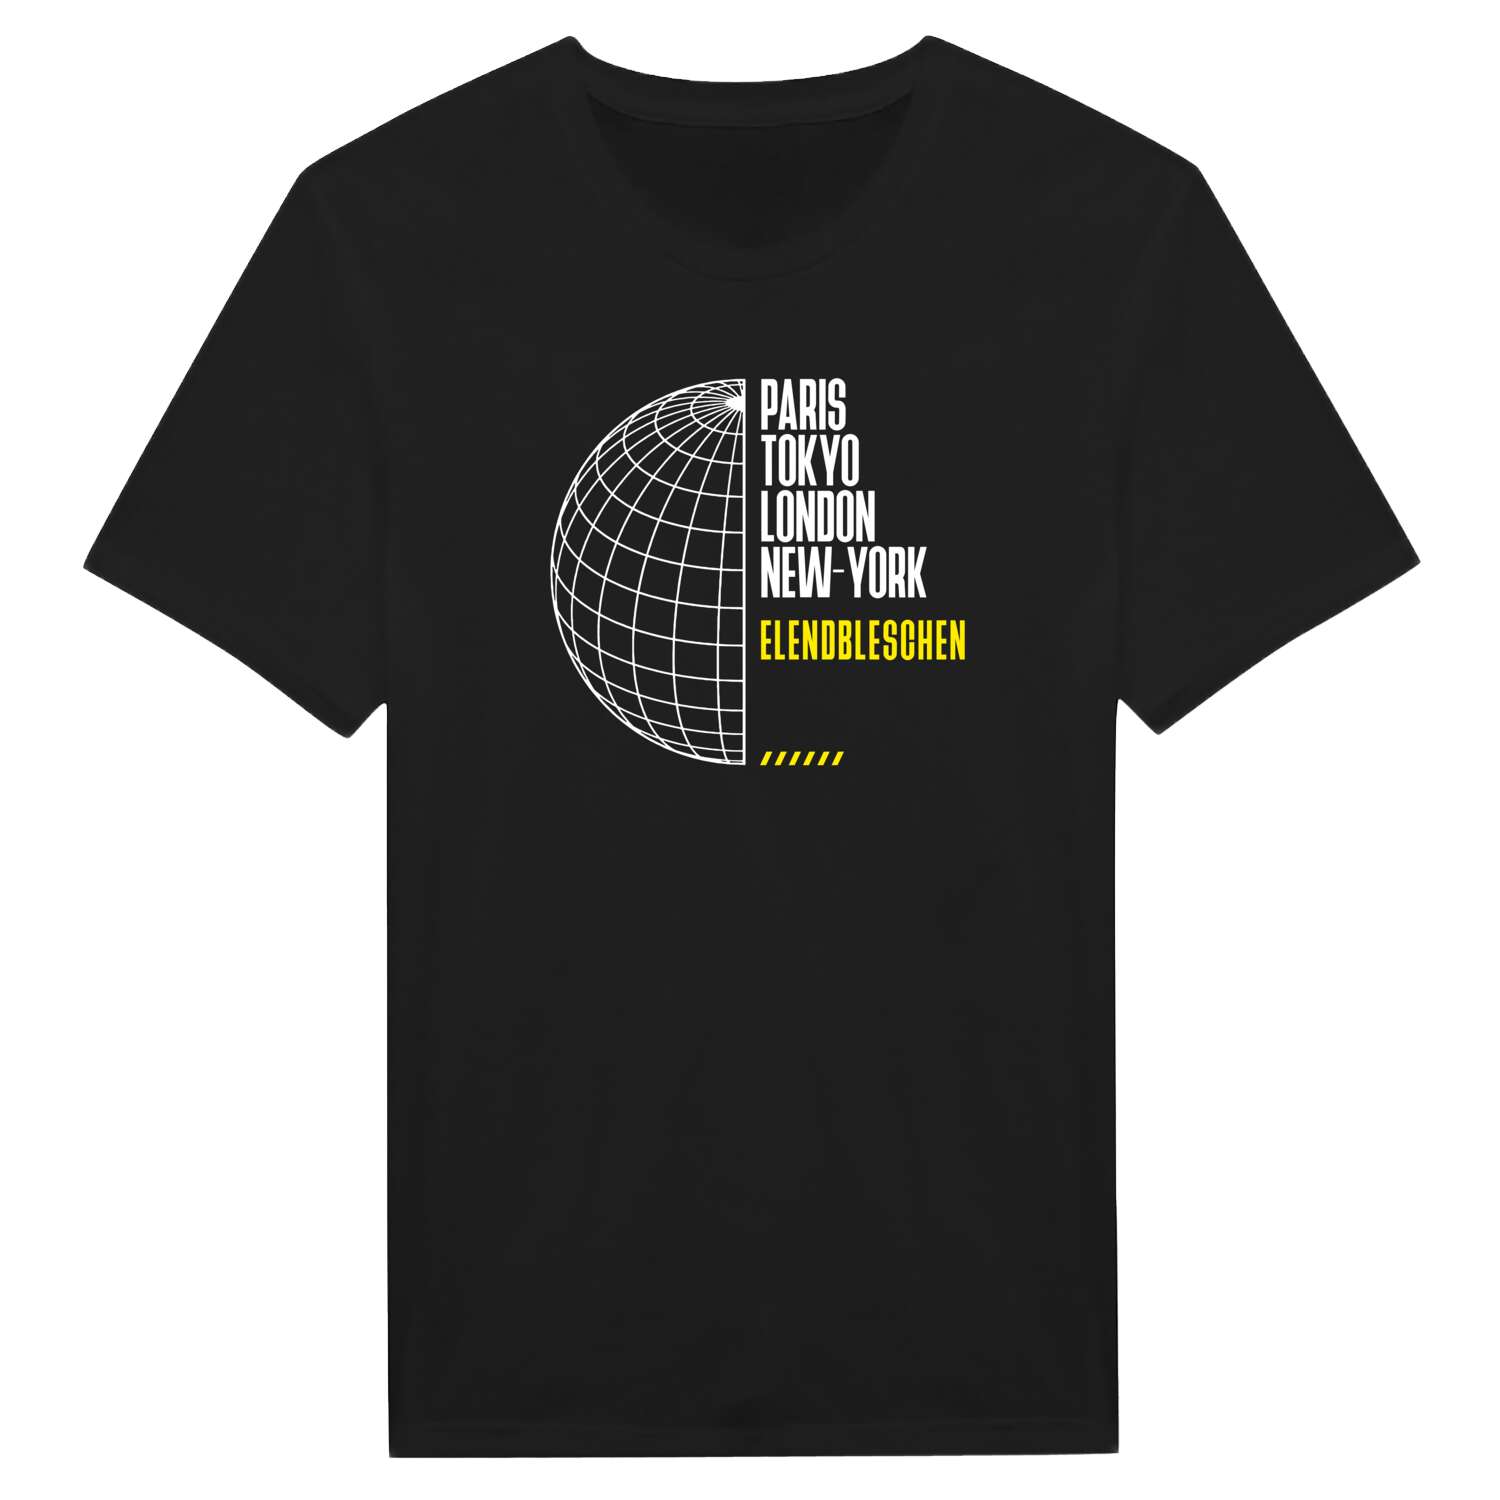 Elendbleschen T-Shirt »Paris Tokyo London«